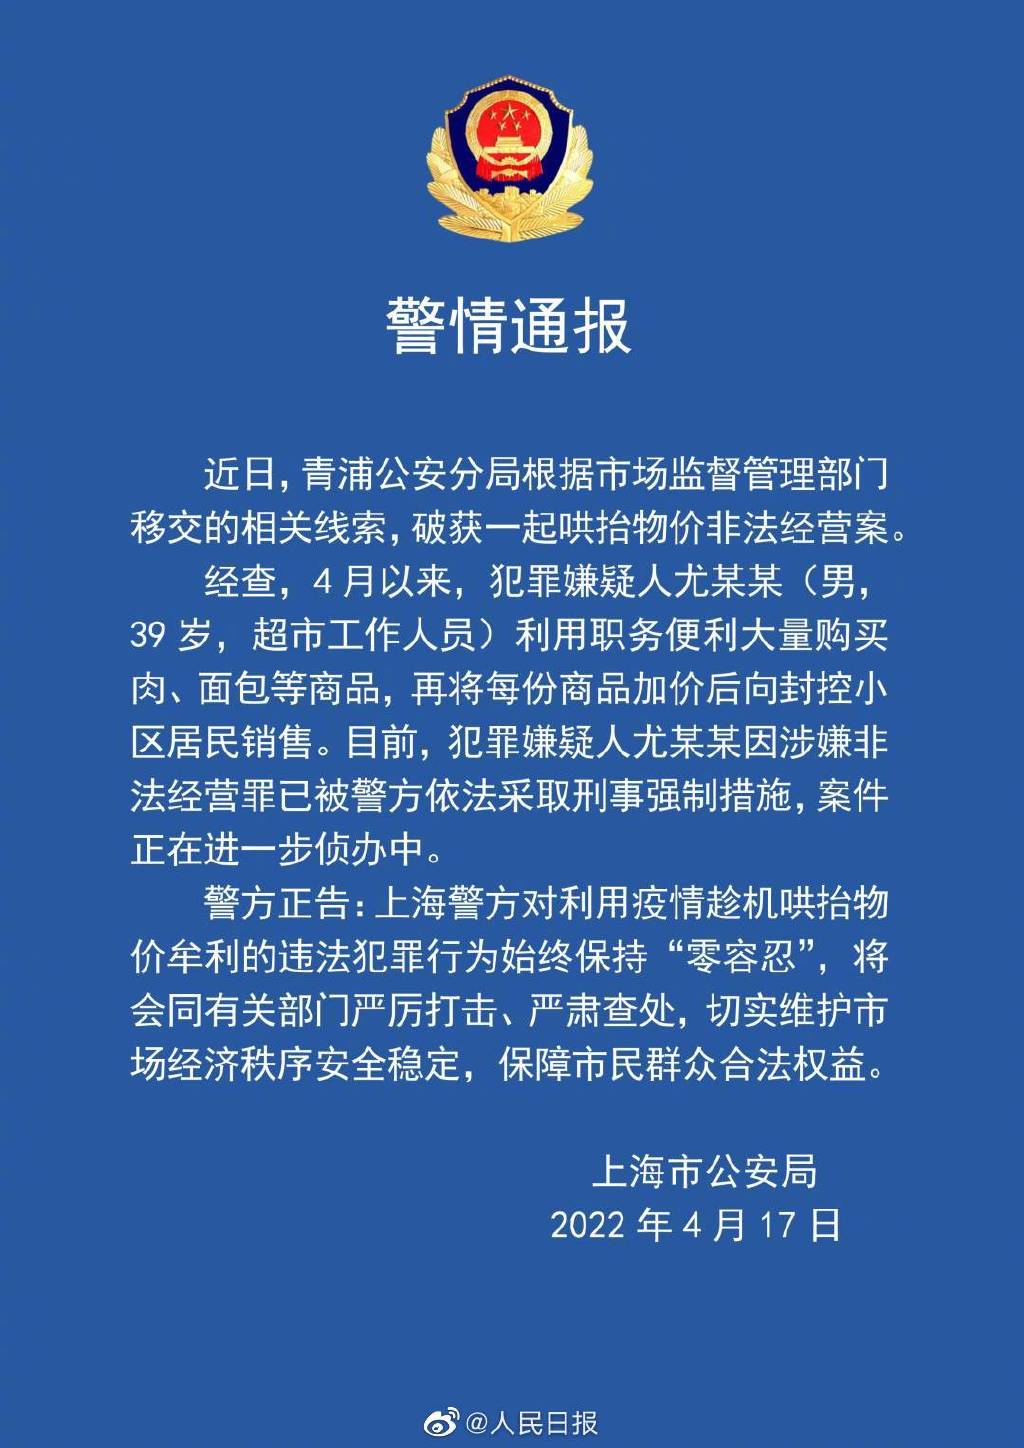 上海一超市员工加价销售商品涉嫌非法经营 被采取刑事强制措施